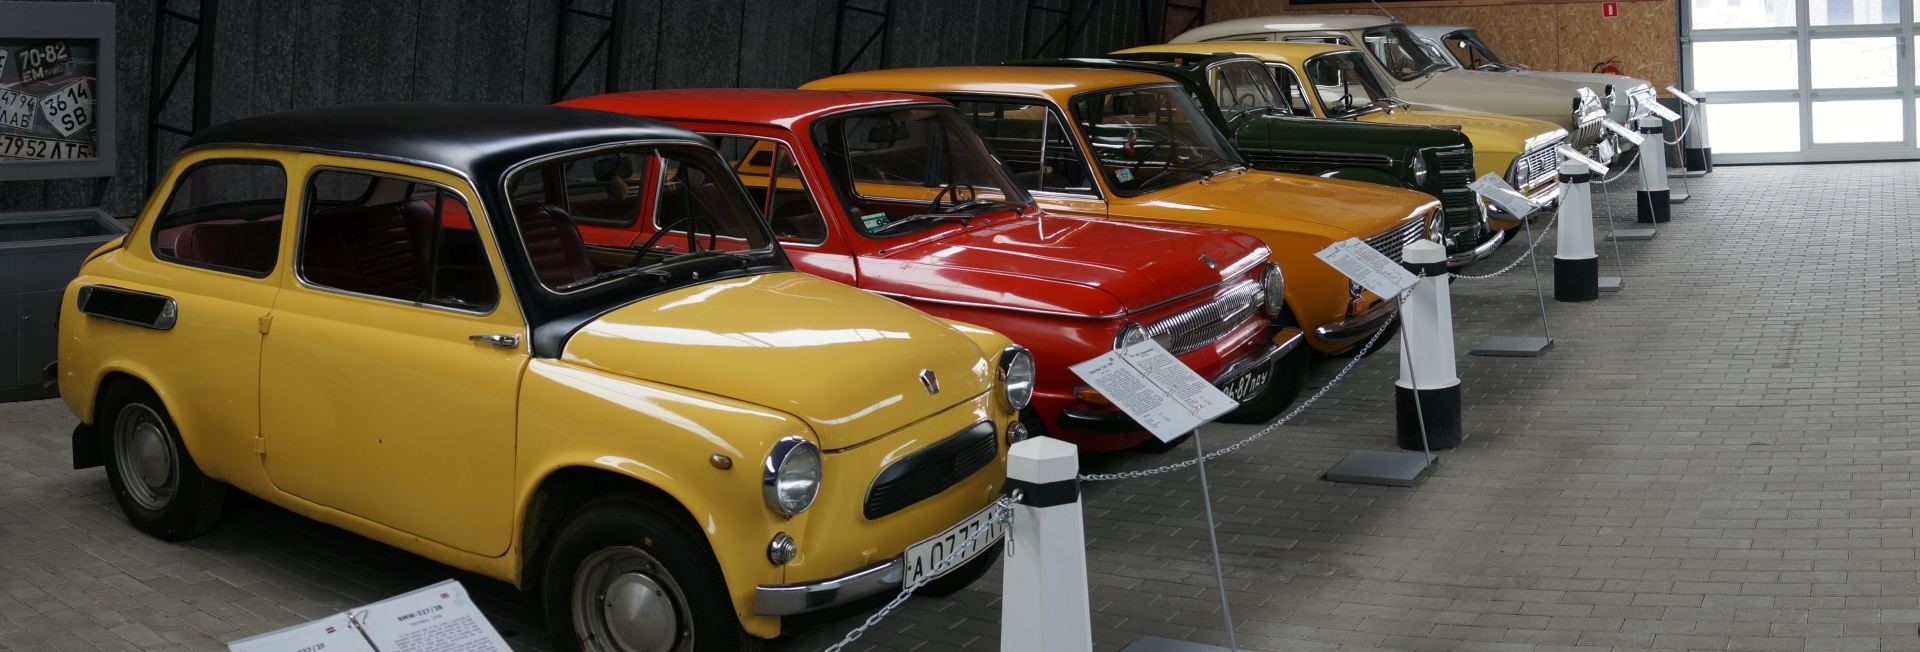 Old Soviet cars.